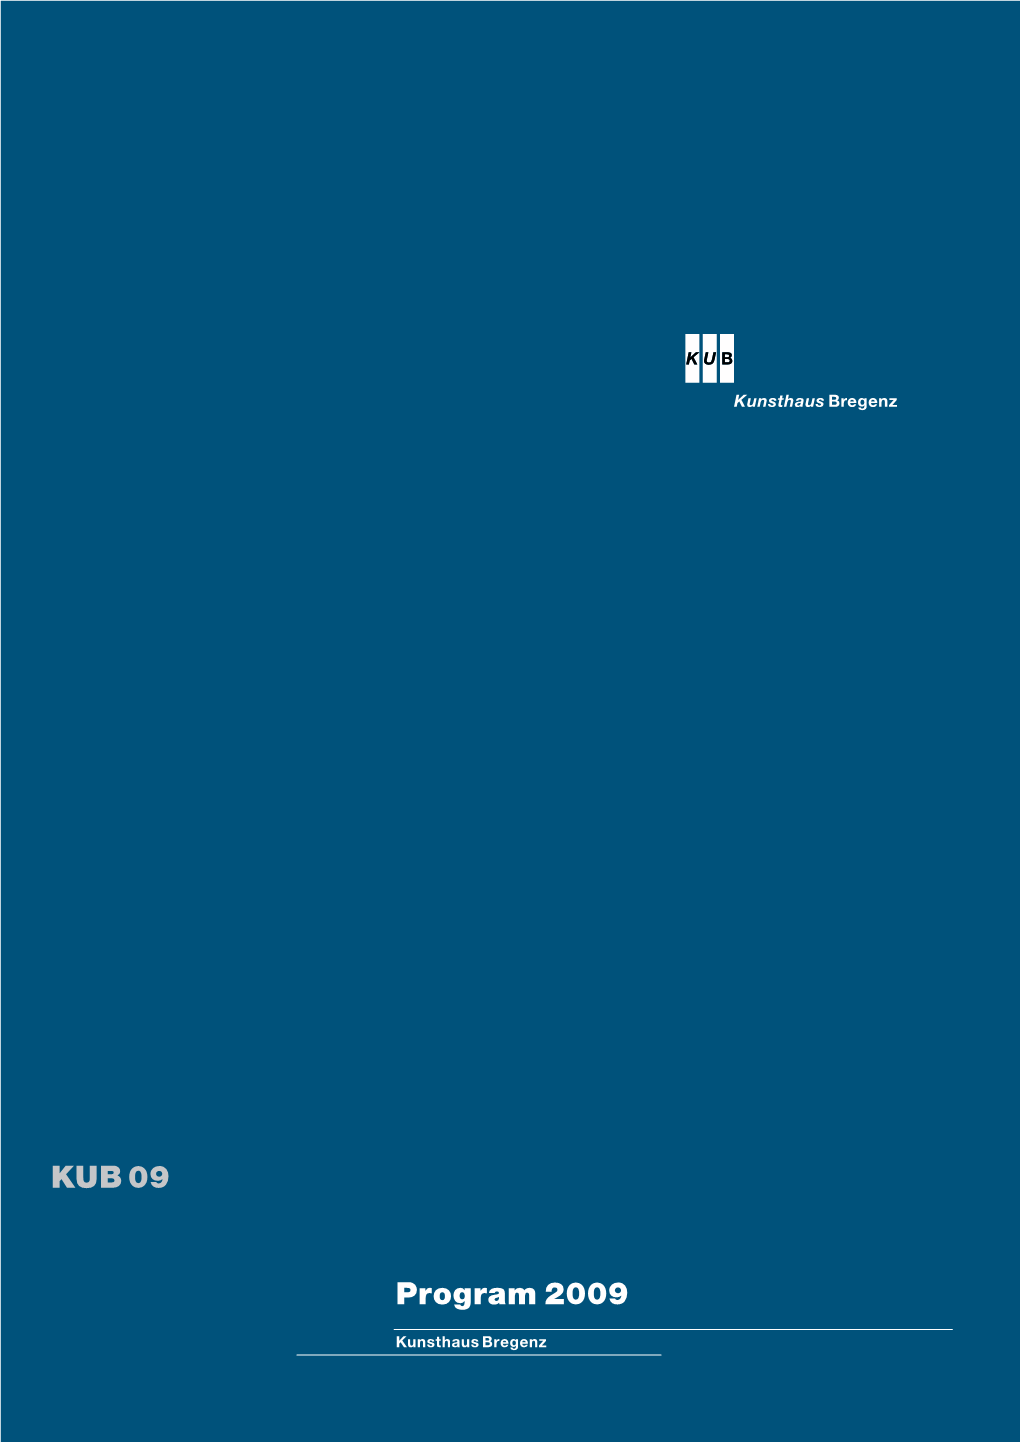 KUB 09 Program 2009